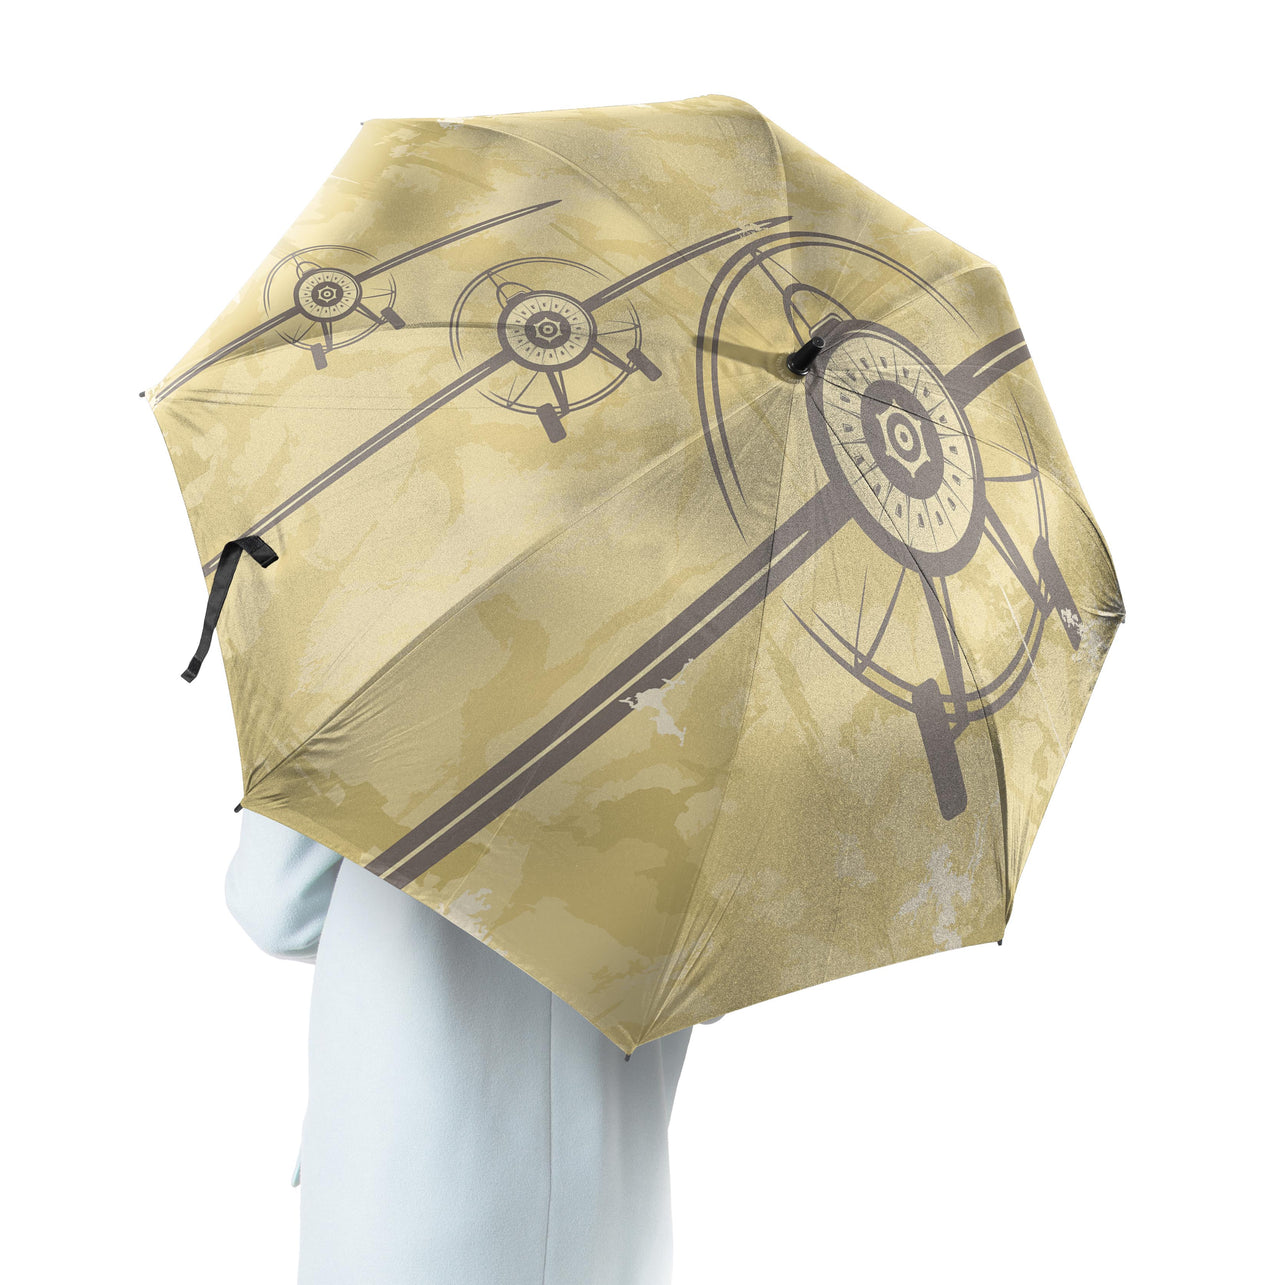 Super Vintage Propeller Designed Umbrella